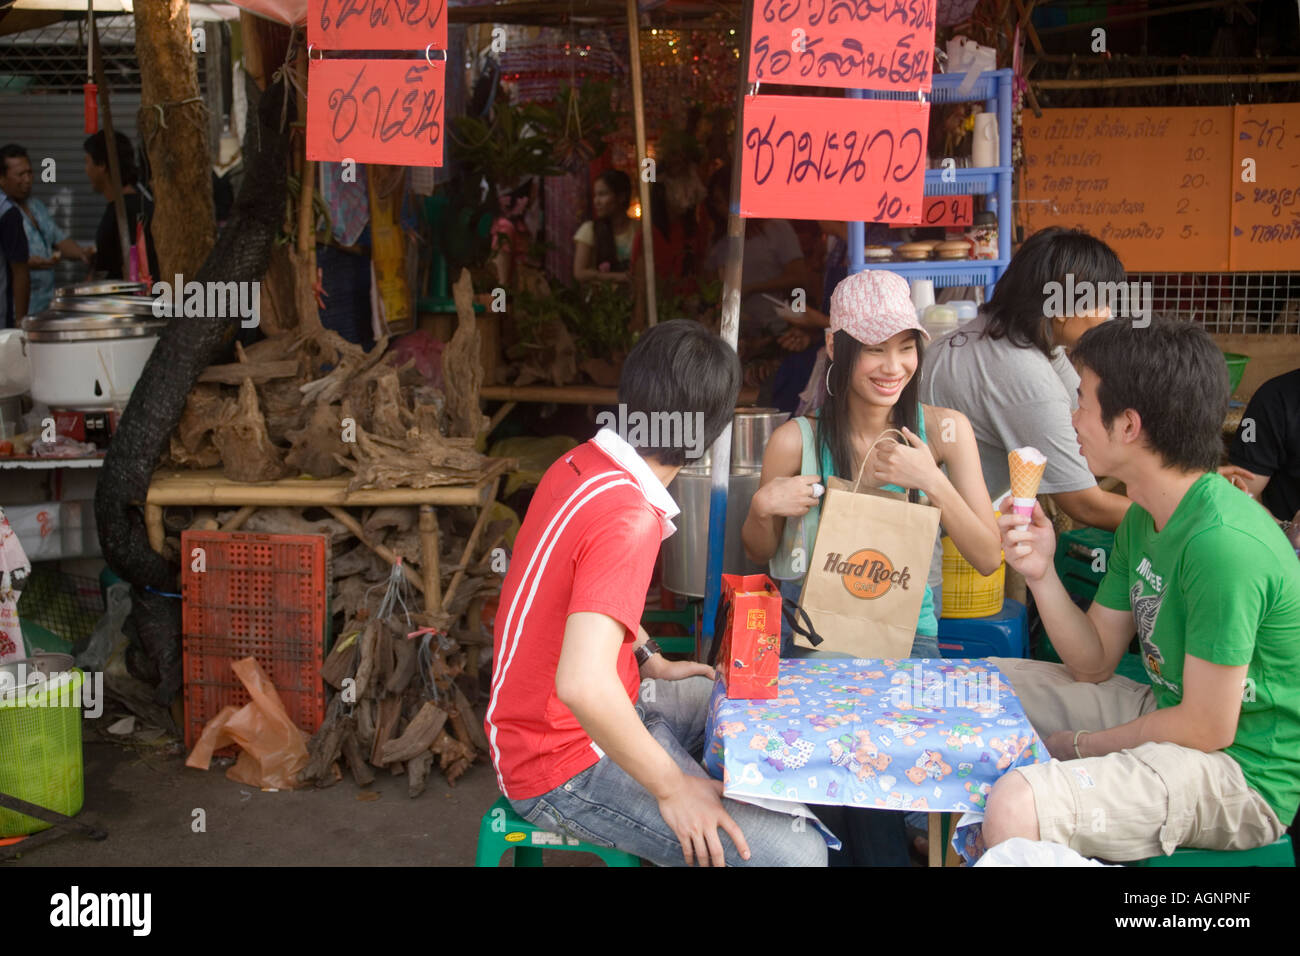 Drei junge Menschen sitzen an einem Tisch in der Nähe von einem Essen stand ein Essen Eis Suan Chatuchak Weekend Market Bangkok Thailand Stockfoto